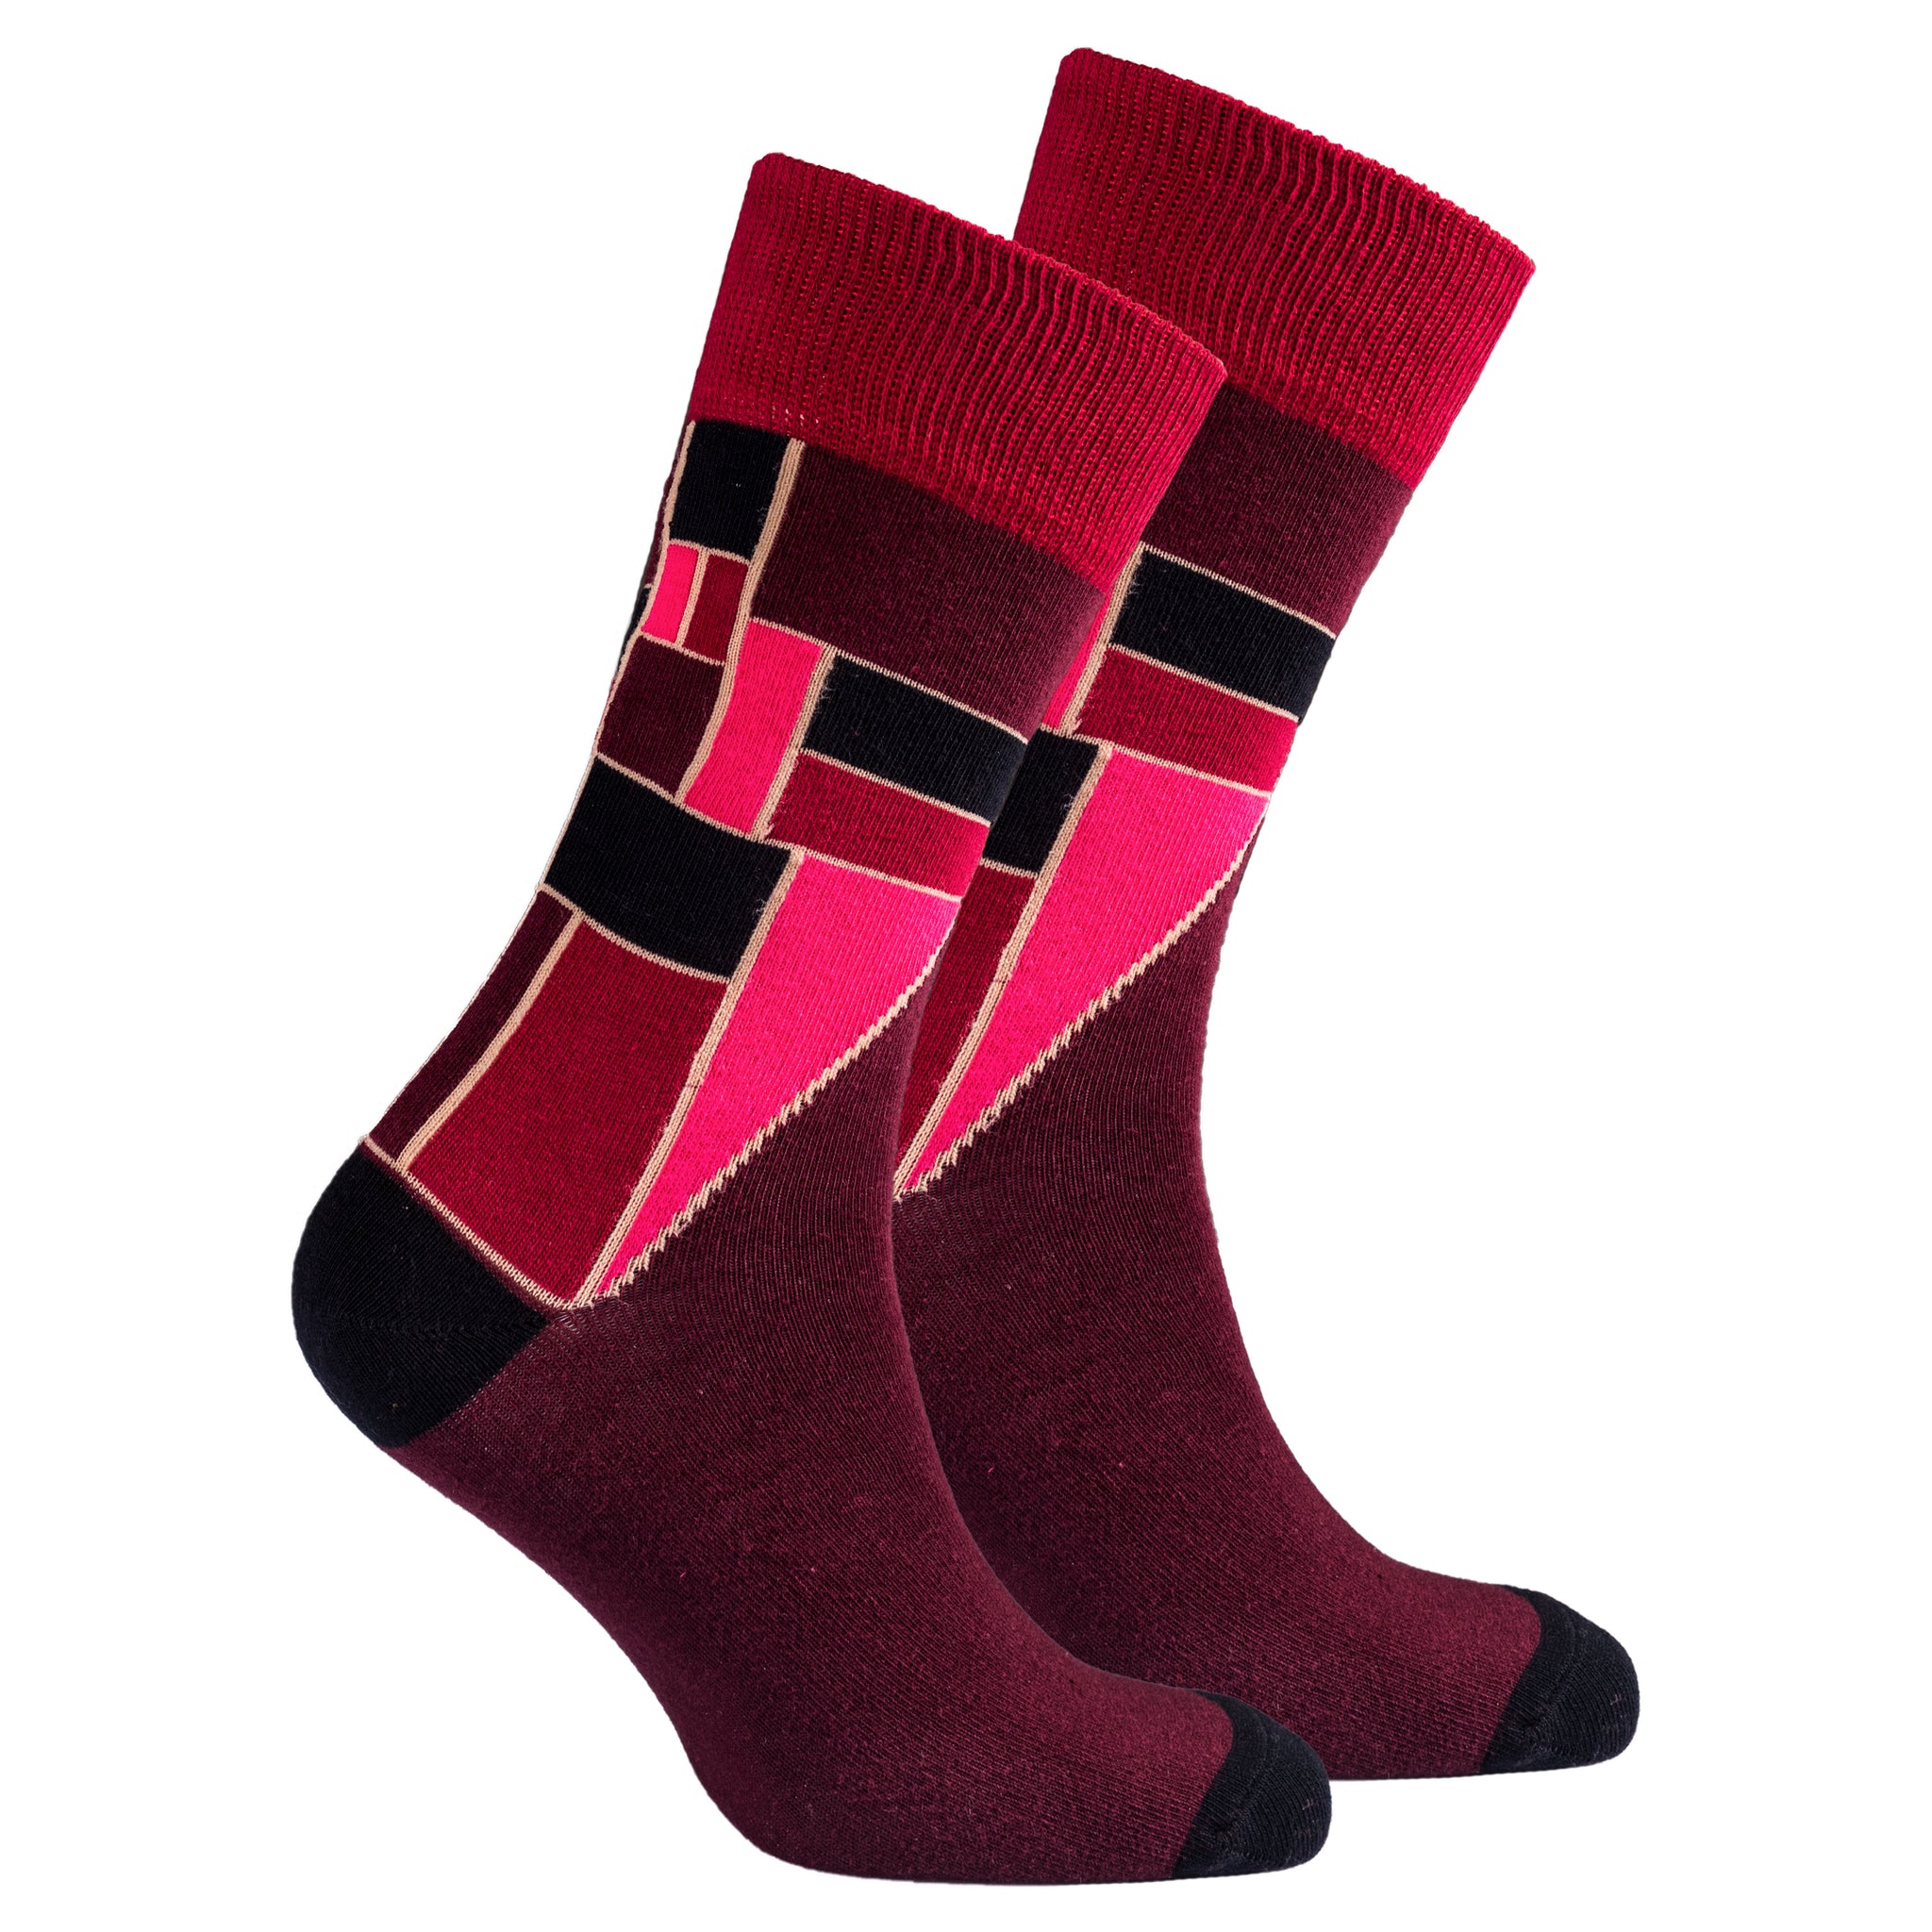 Men's Scarlet Cube Socks